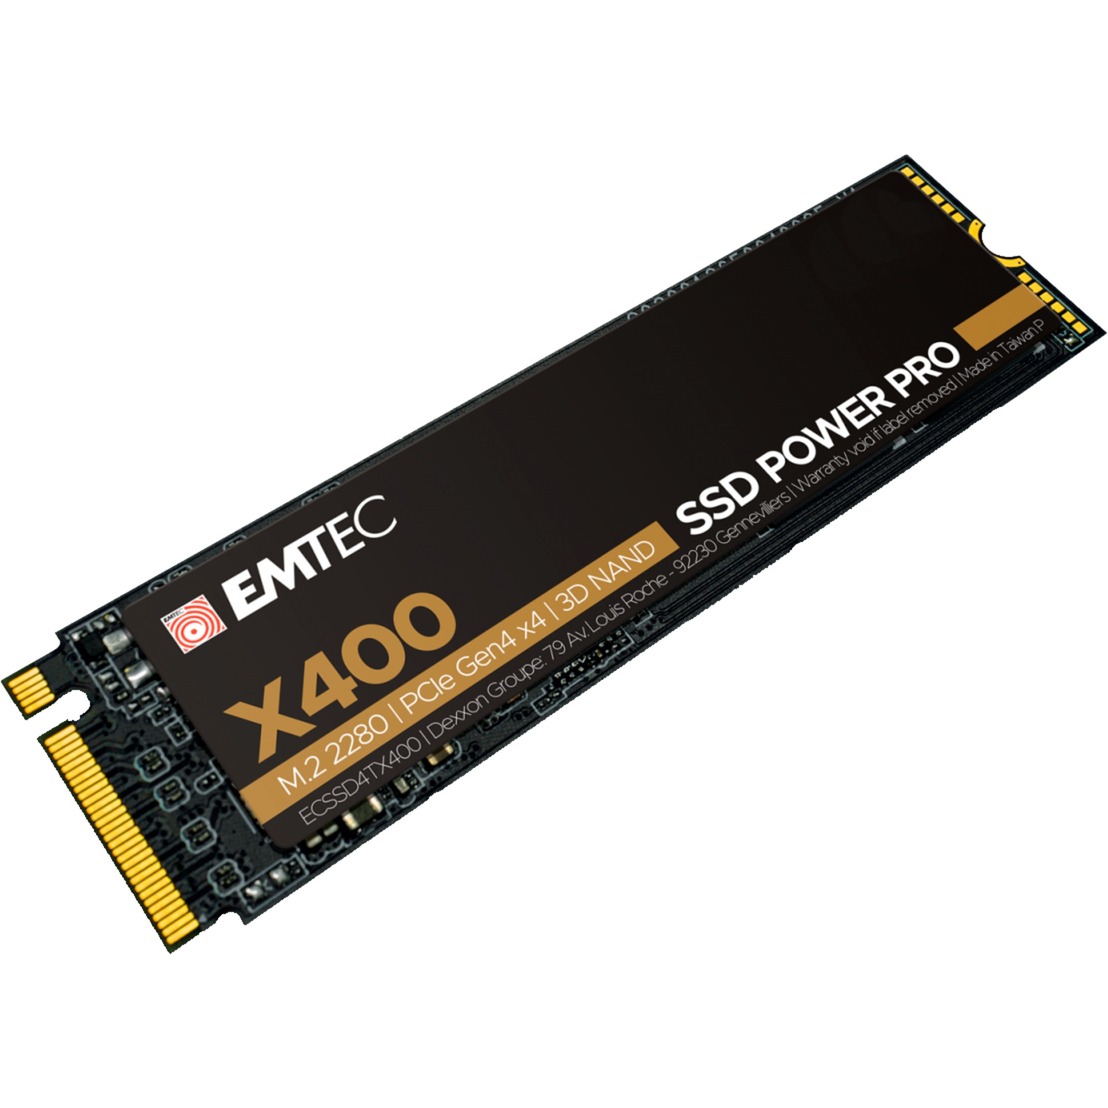 Image of Alternate - X400 SSD Power Pro 2 TB online einkaufen bei Alternate